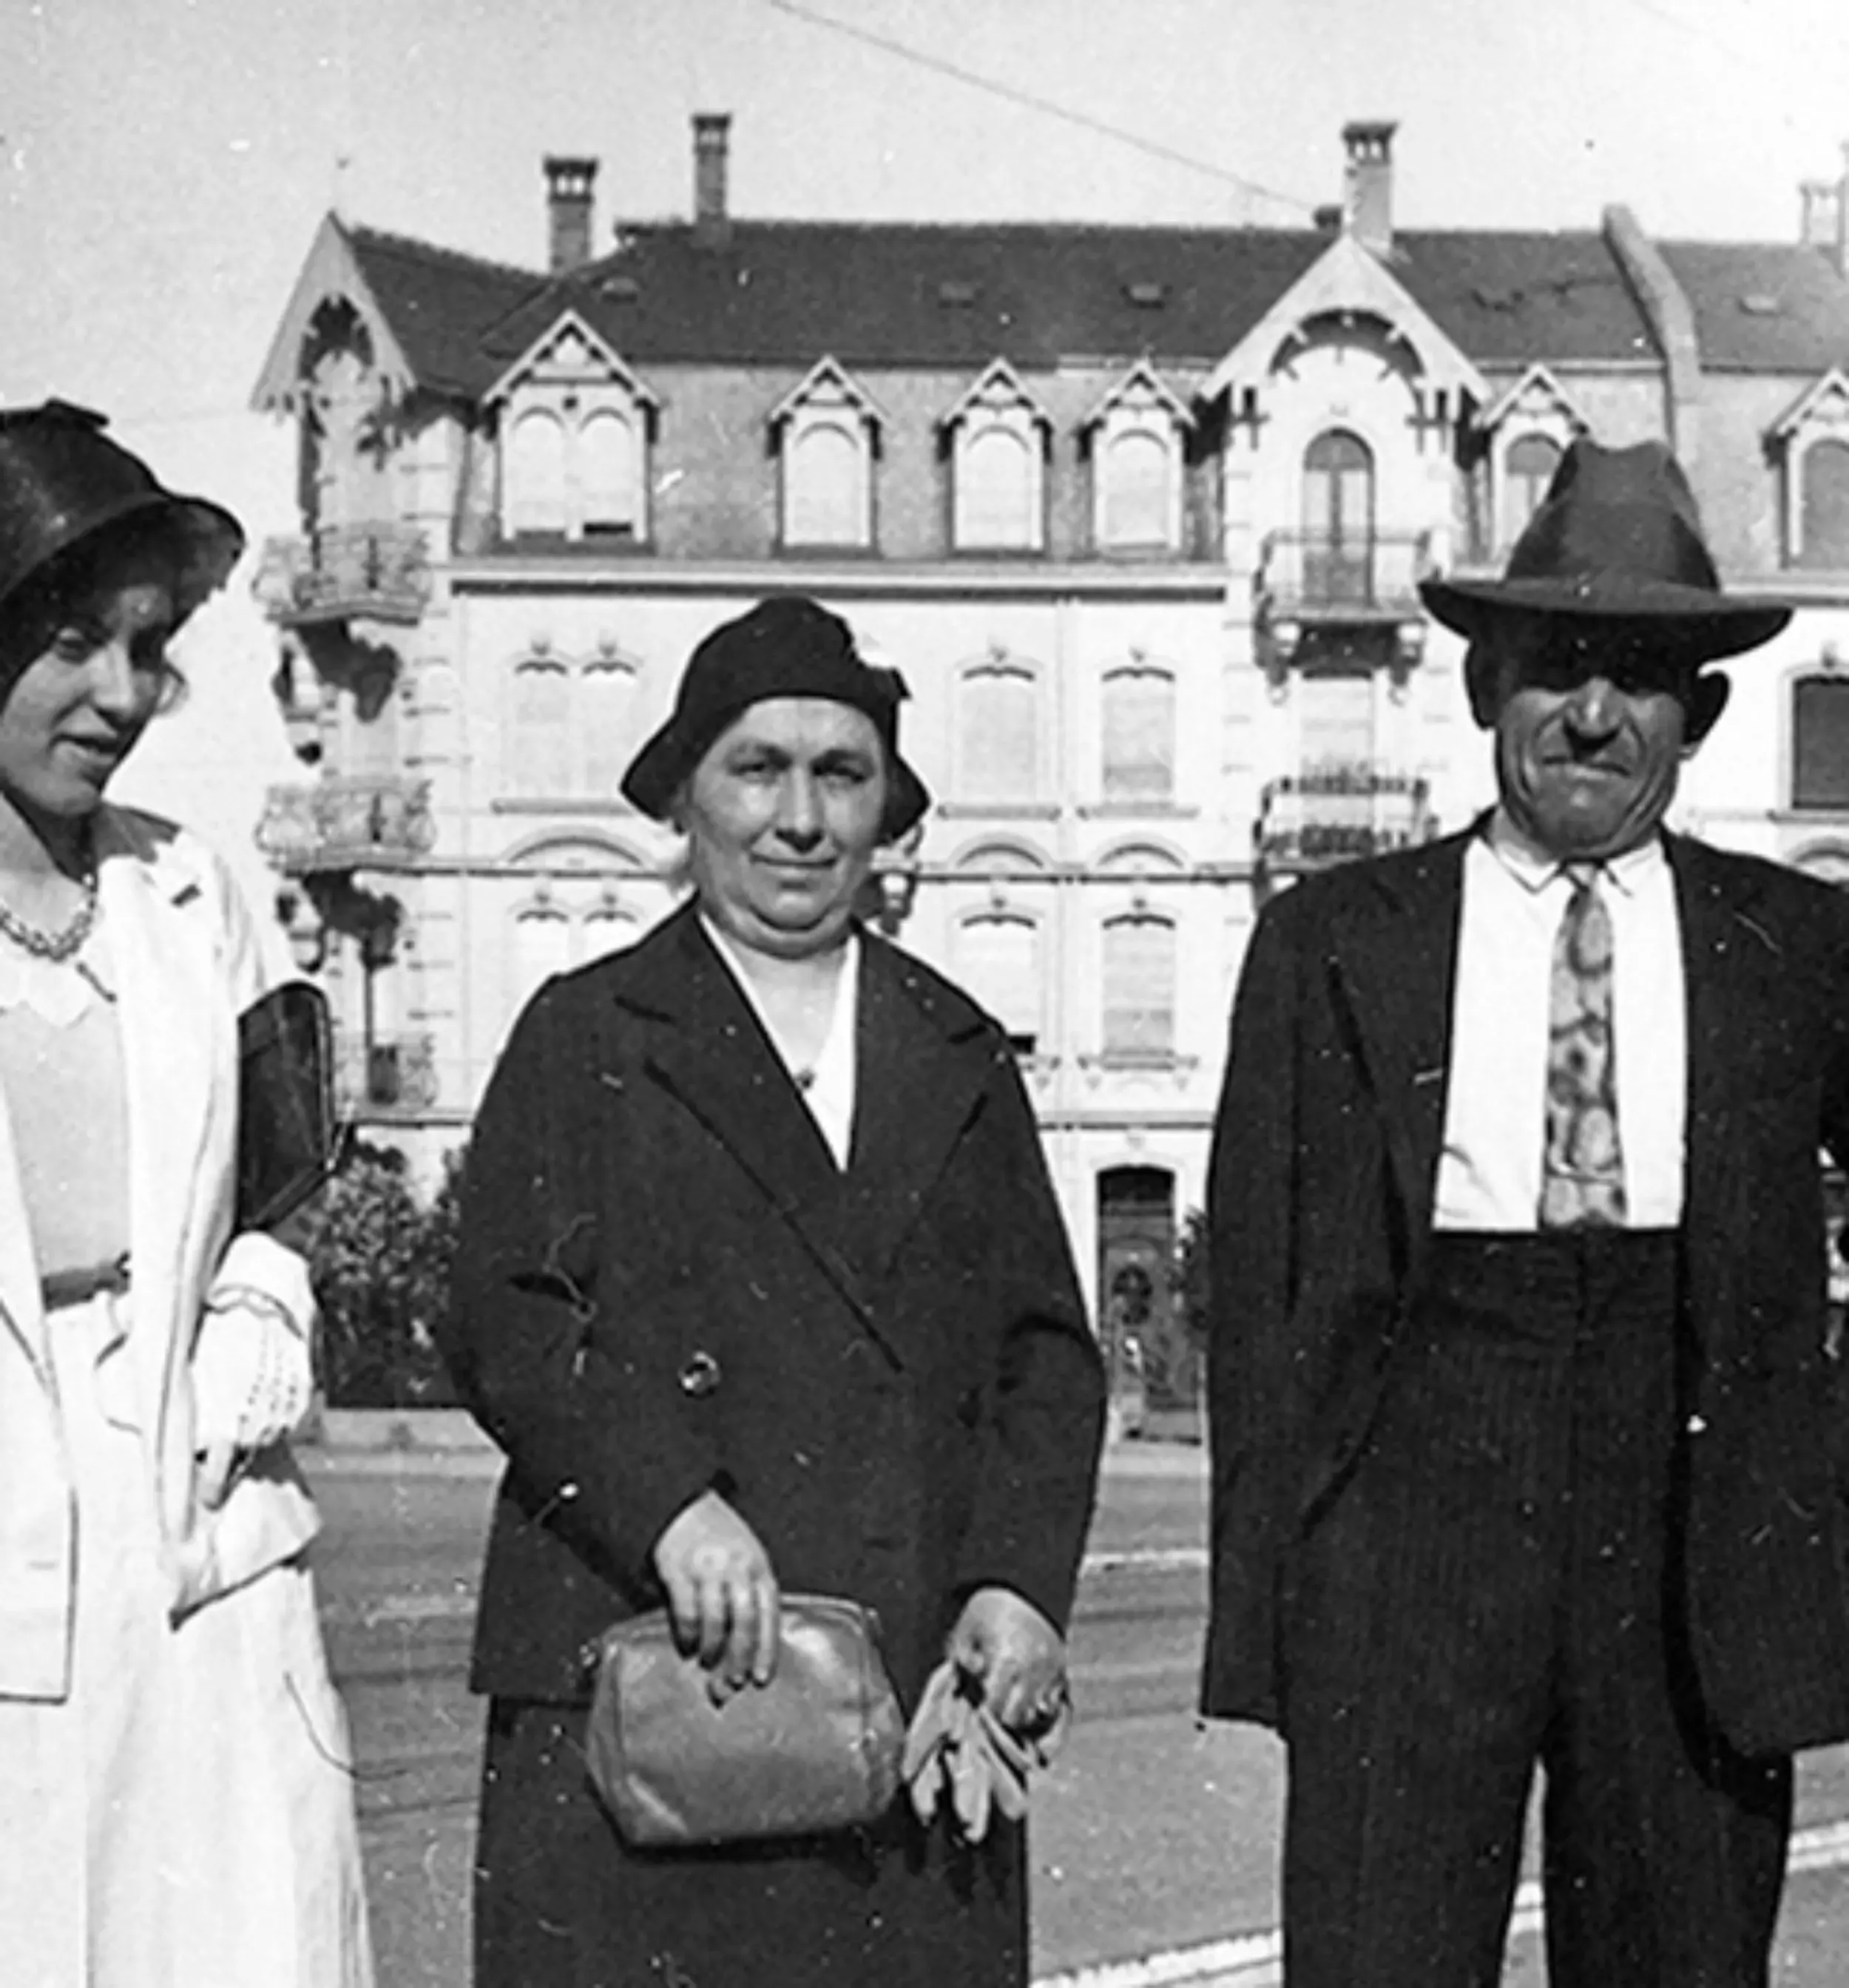 Meine Mutter – Alvara Distri – links im Bild mit meinen Grosseltern als Trio in der Stadt